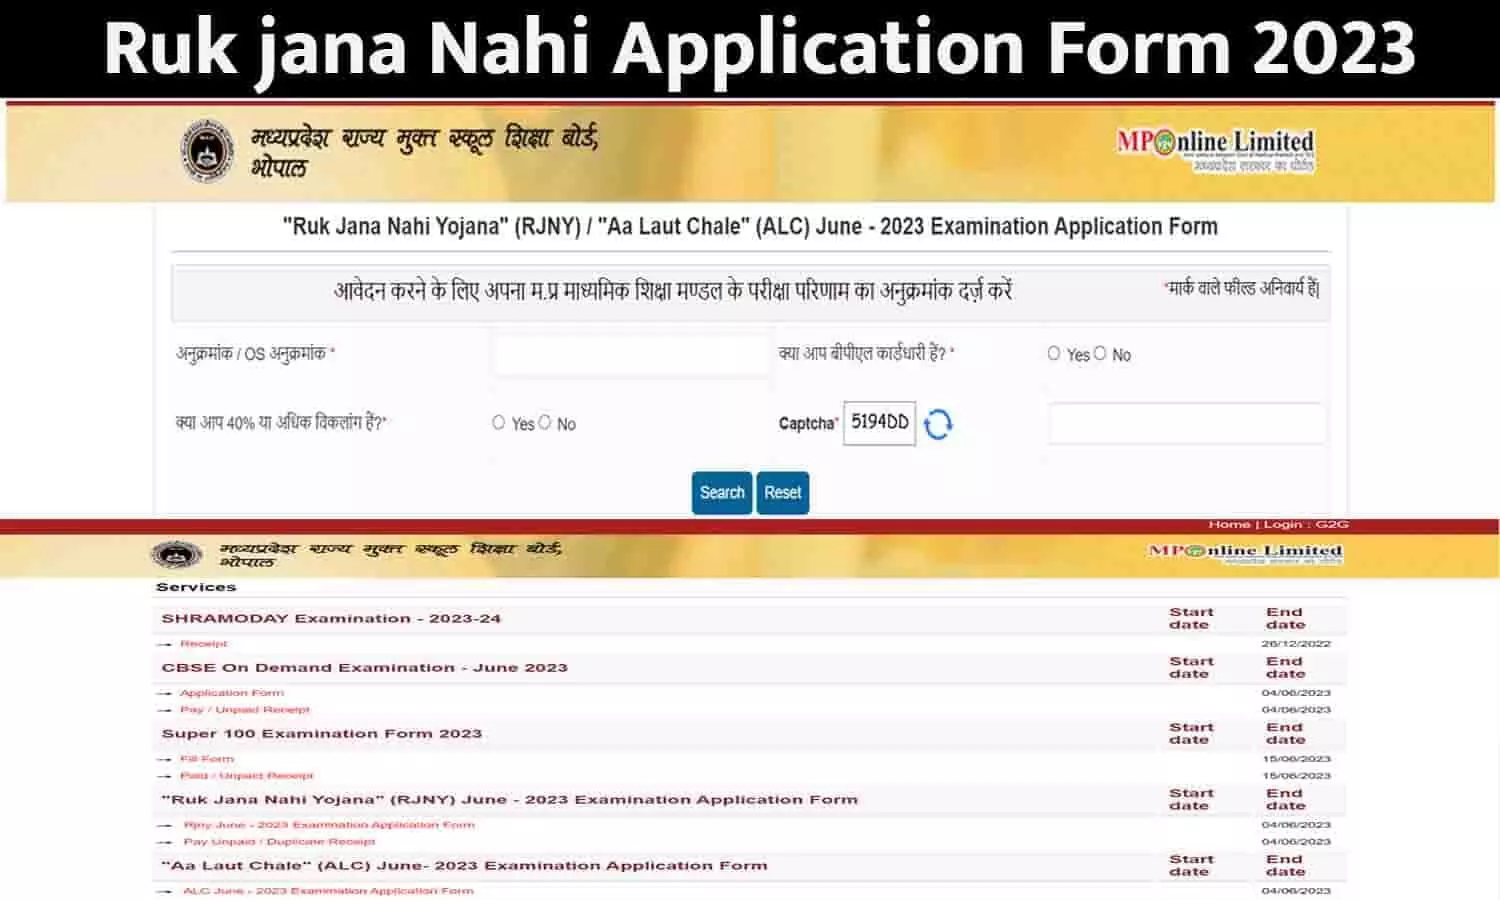 Ruk jana Nahi Application Form Kaise Bhare: रुक जाना नहीं योजना एप्लीकेशन फॉर्म कैसे भरें 2023